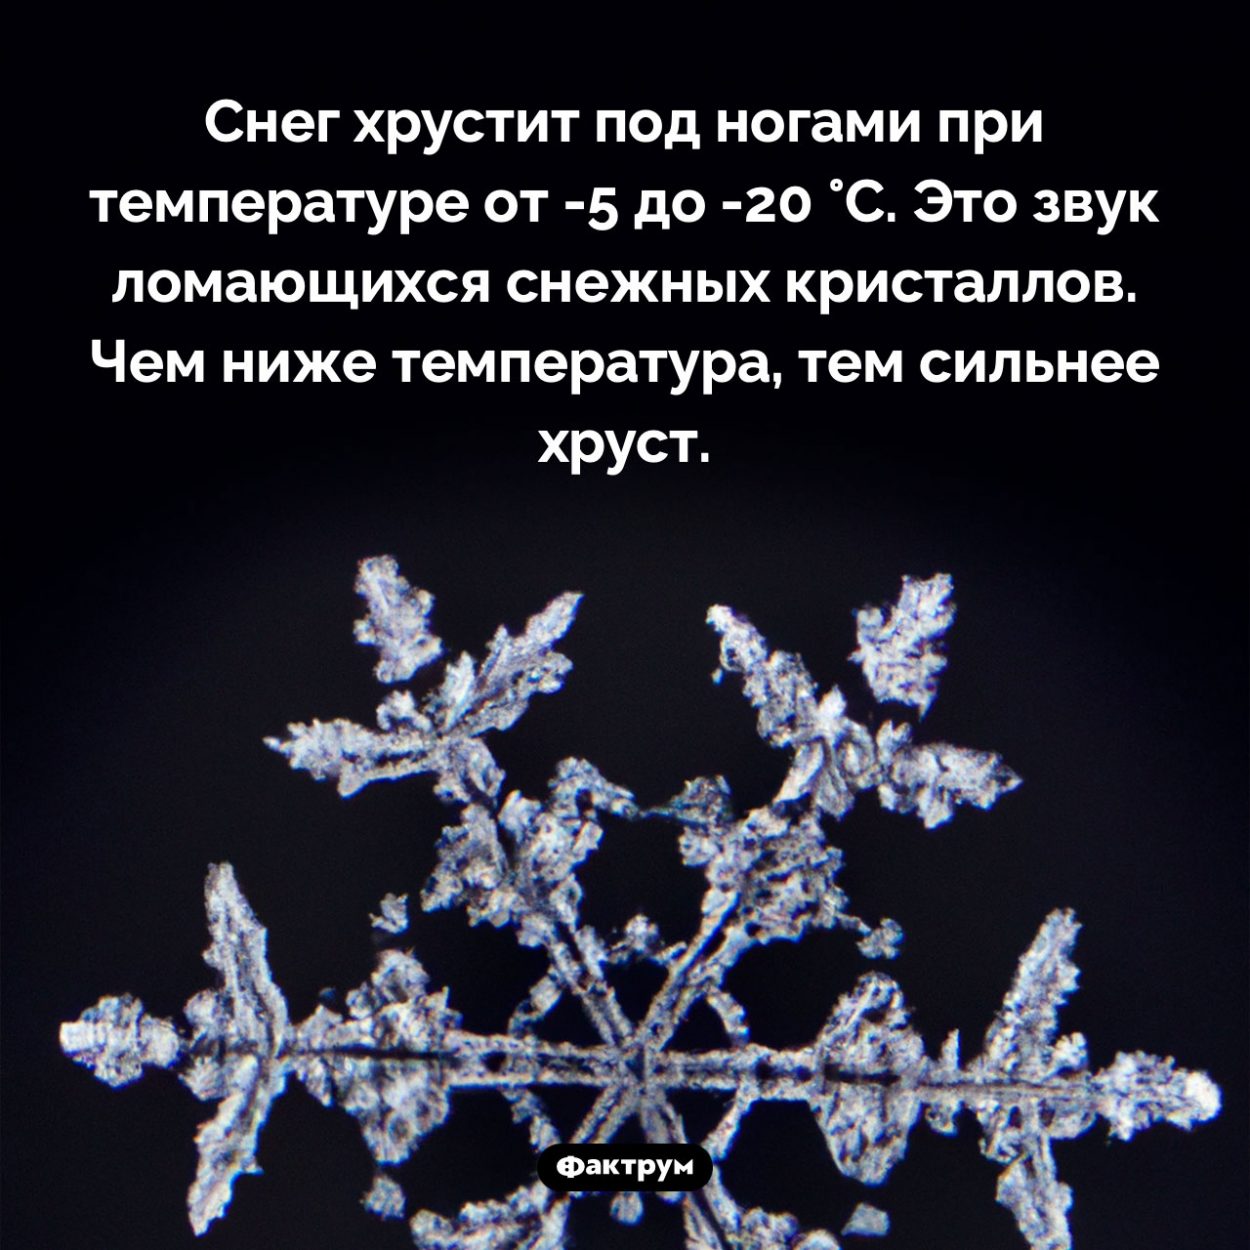 Когда хрустит снег. Снег хрустит под ногами при температуре от -5 до -20 °C. Это звук ломающихся снежных кристаллов. Чем ниже температура, тем сильнее хруст.